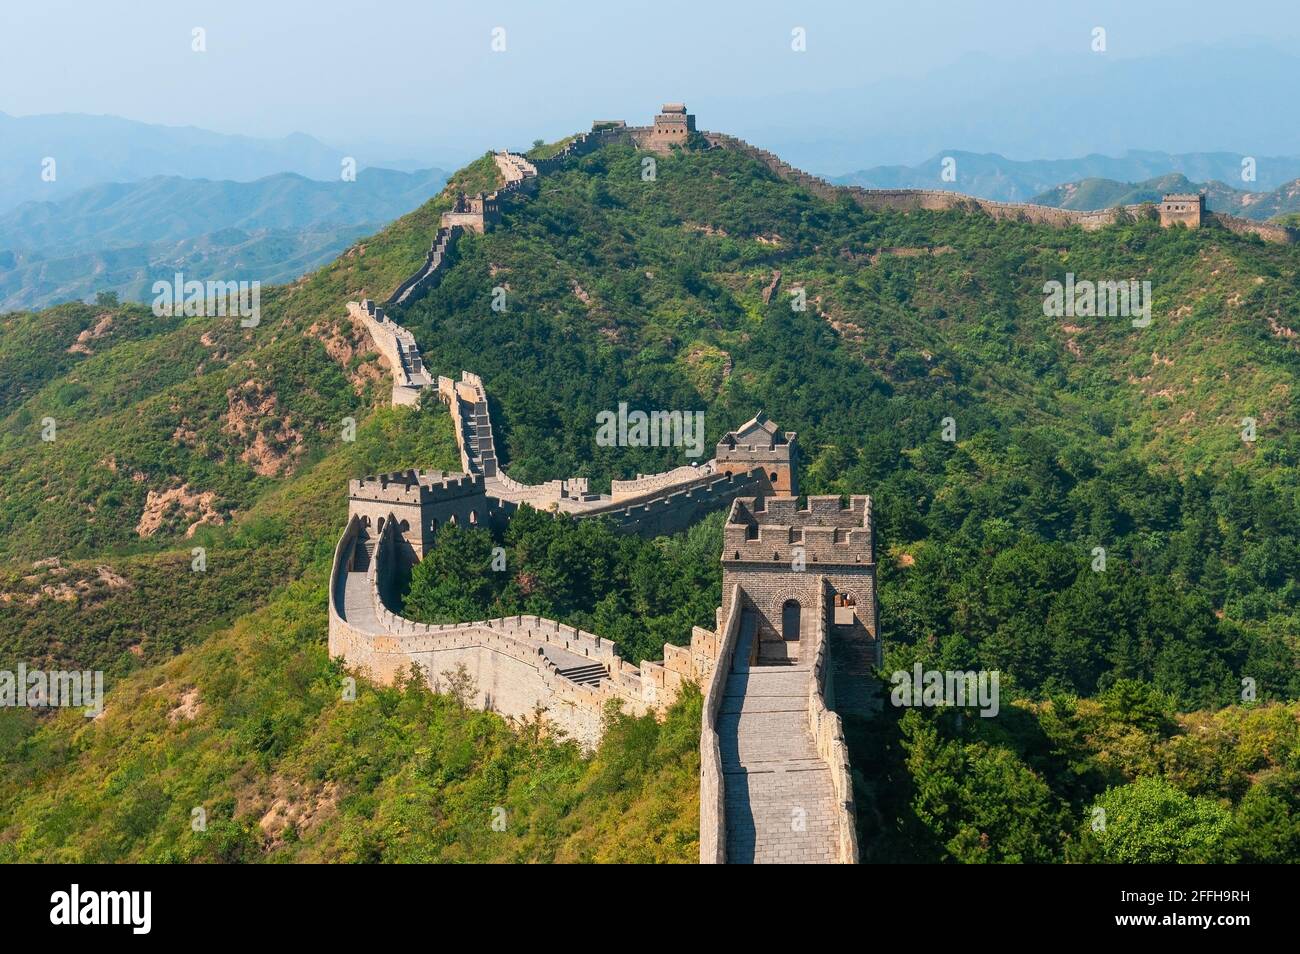 Jinshanling Great Wall near Beijing, China. Stock Photo